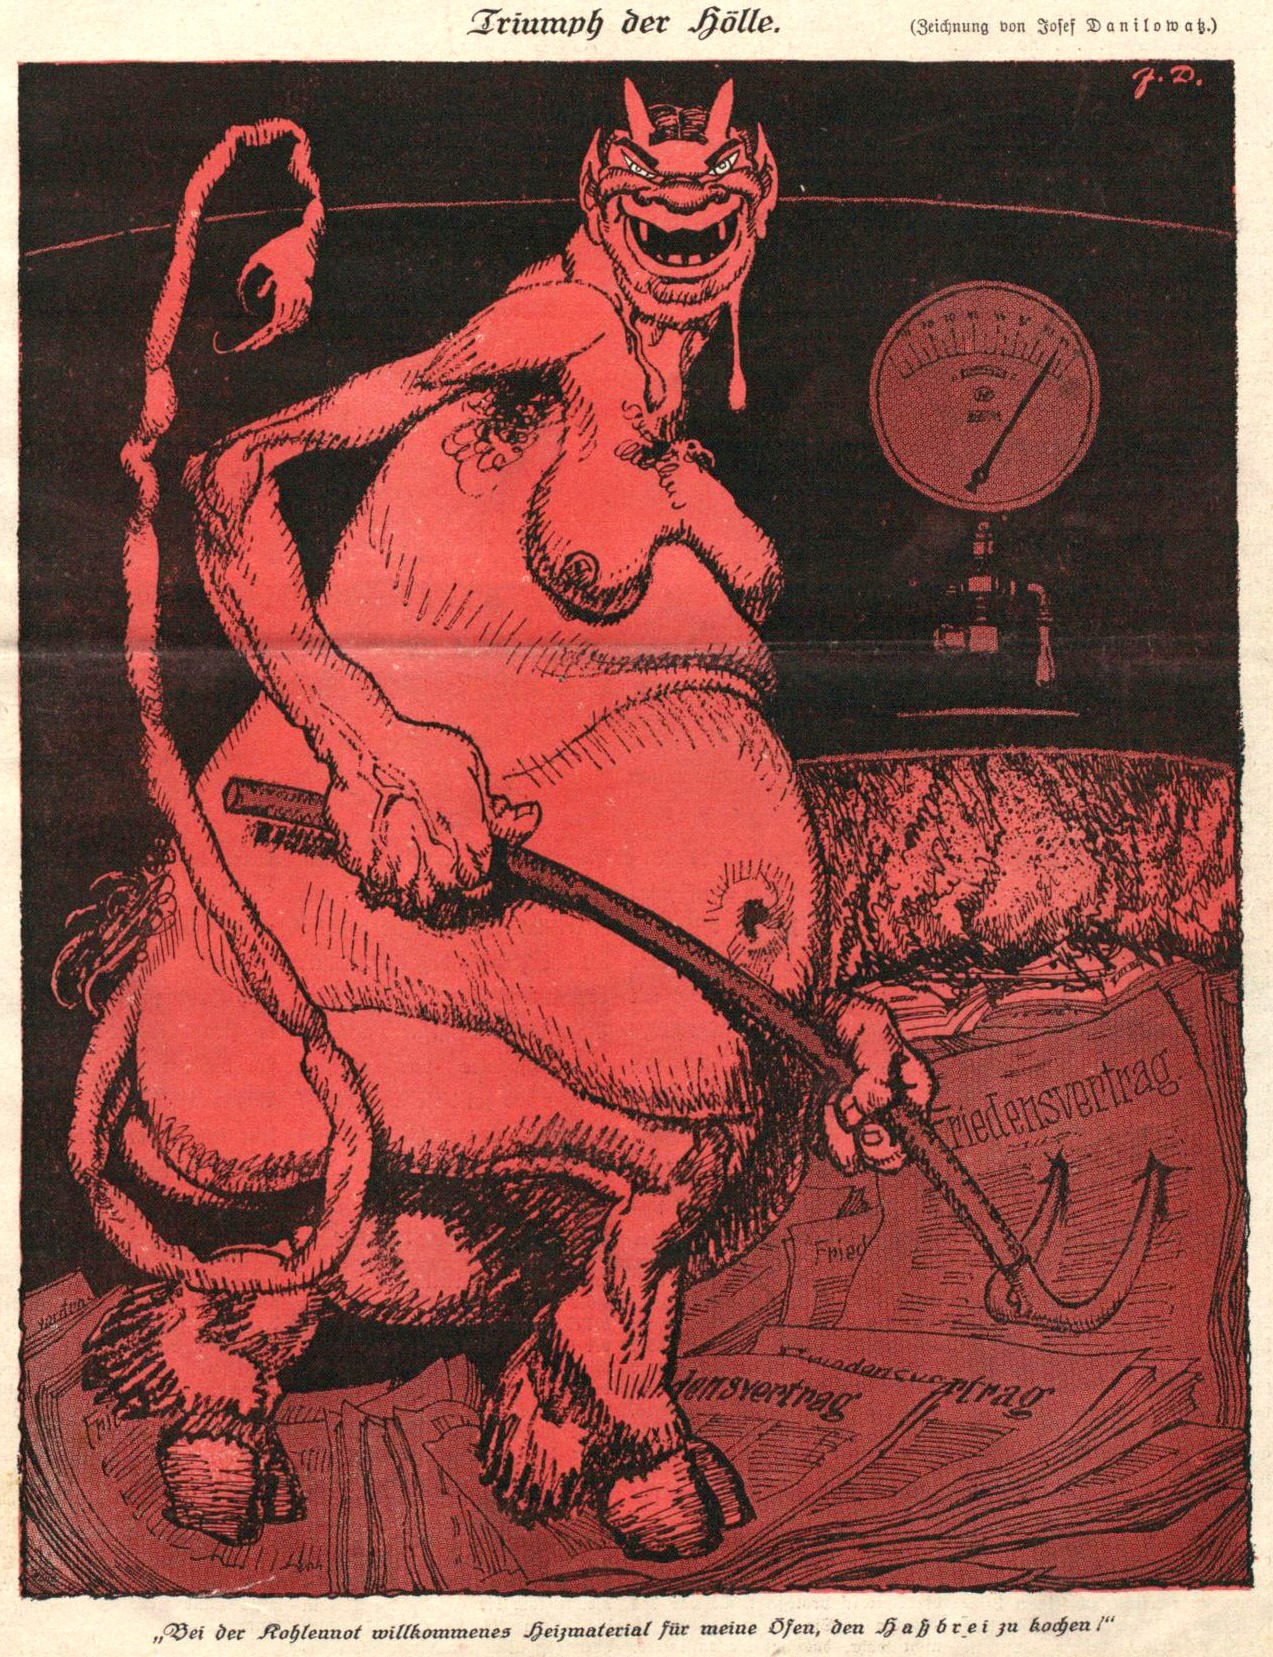 Josef Danilowatz (1877-1945) cover, “Der Götz”, #22, Sept. 6, 1919
Source